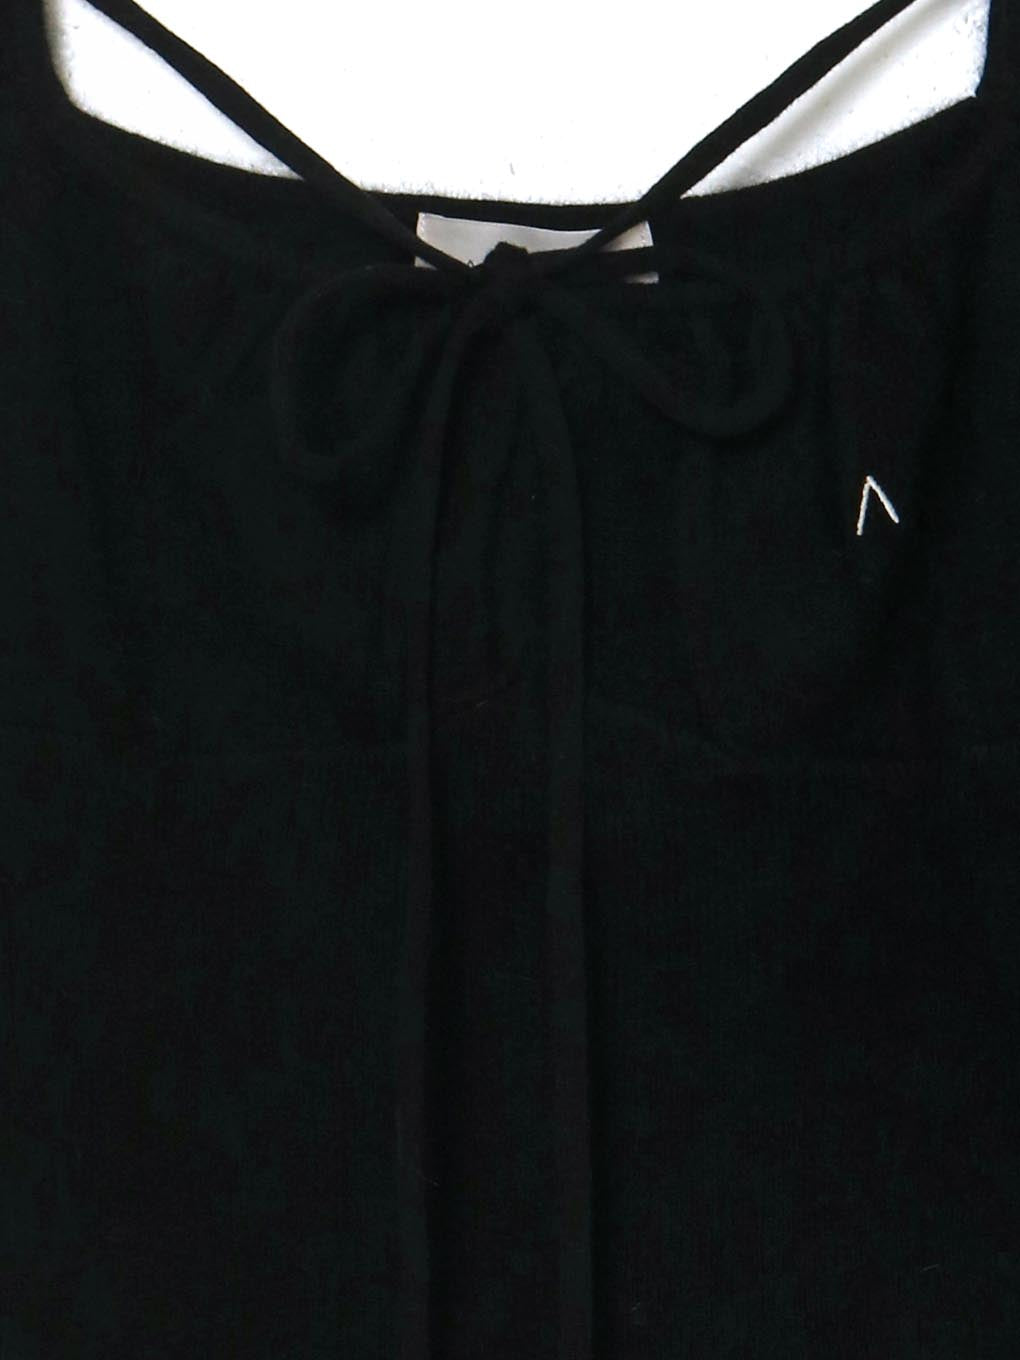 ◎即購入andmary Helena ribbon tops black